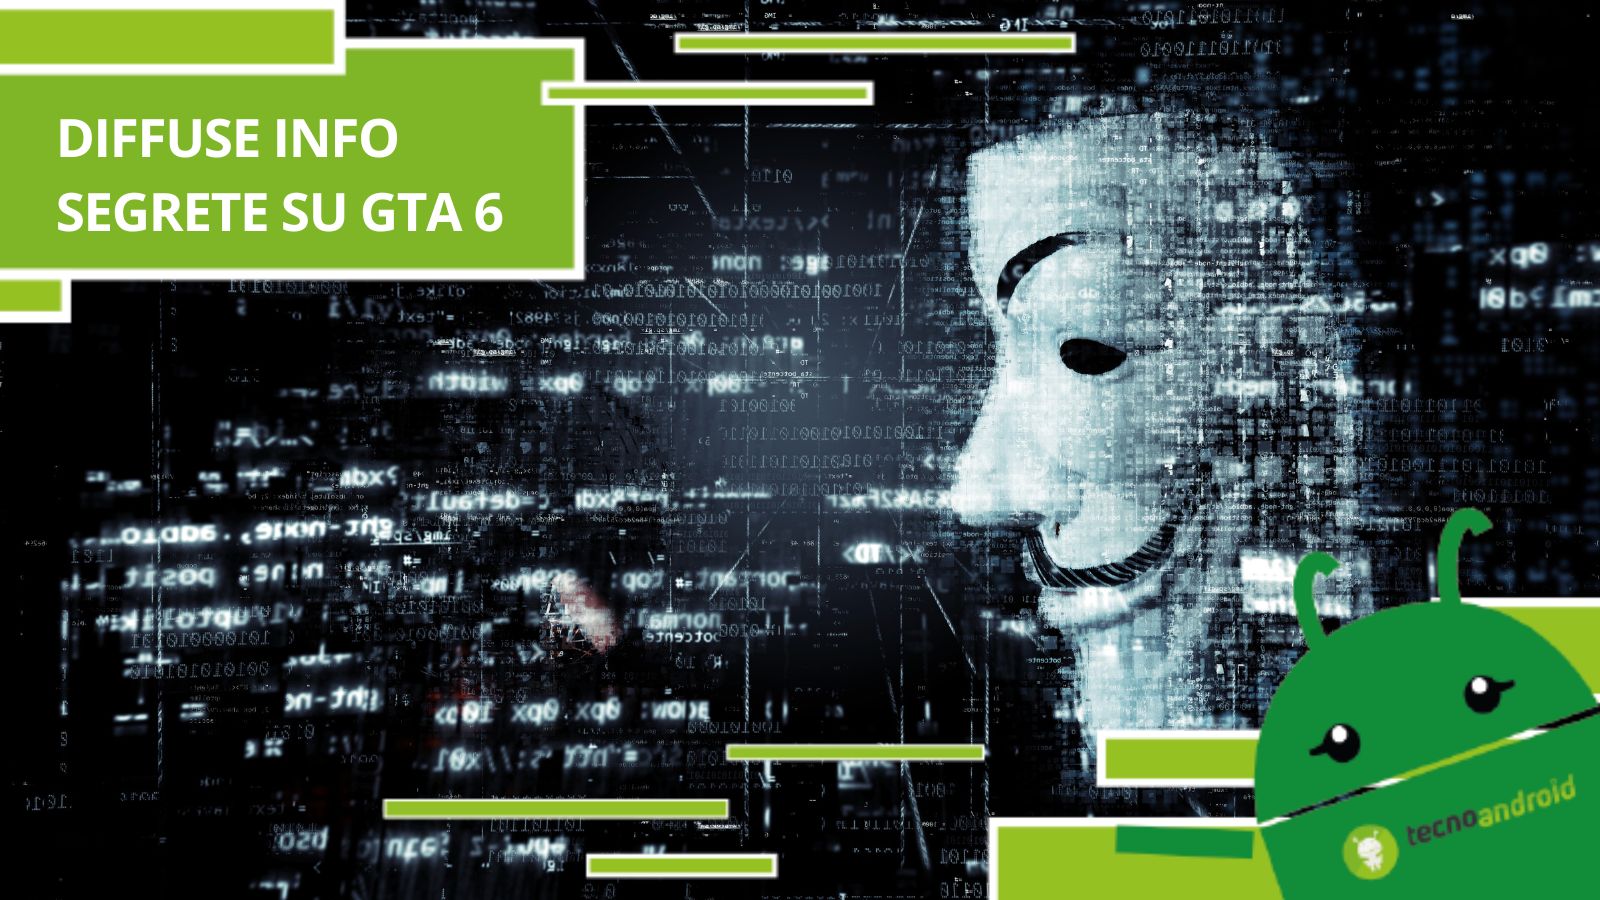 GTA 6, un hacker ha violato il videogame diffondendo online informazioni segrete 